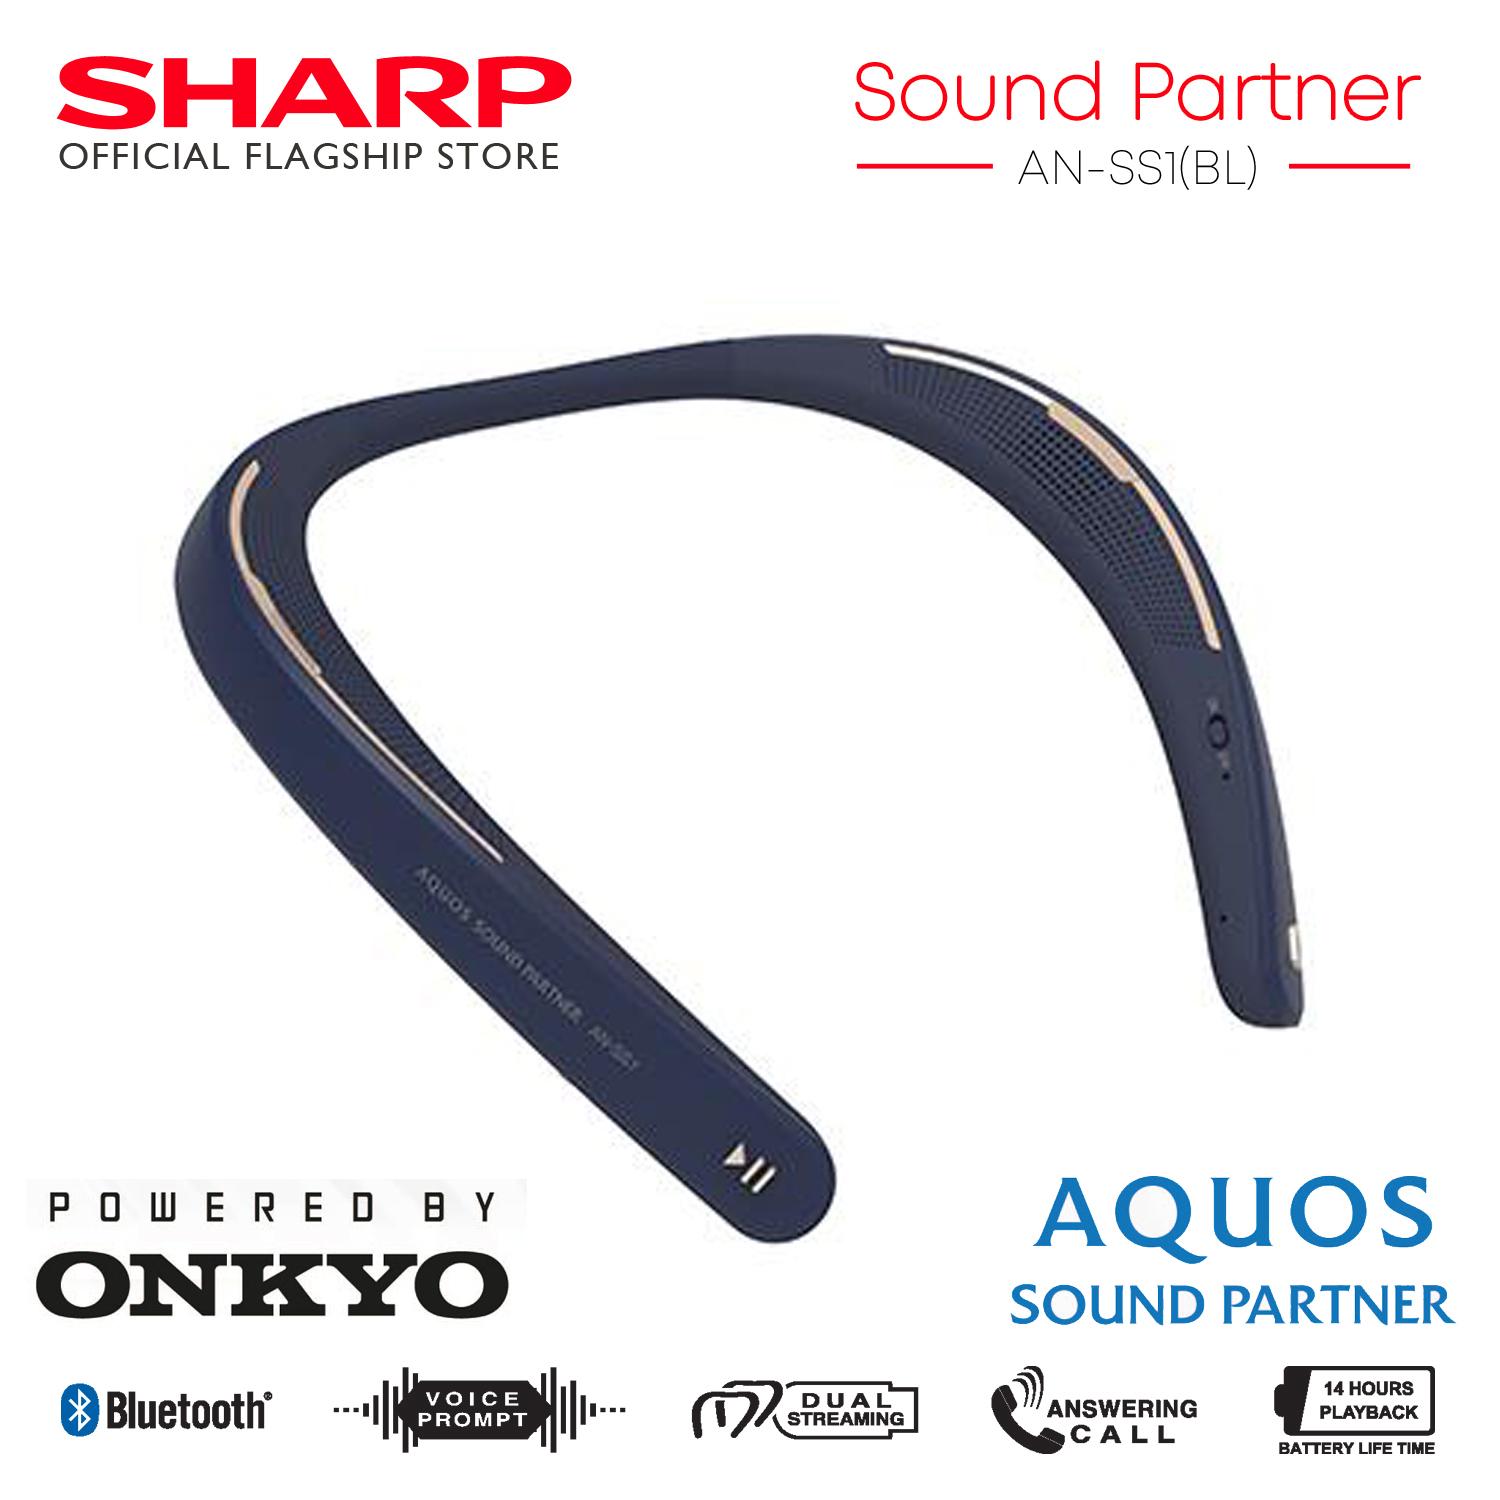 Sharp Sound Partner AN-SS1(BL) Bluetooth Wearable | Lazada PH